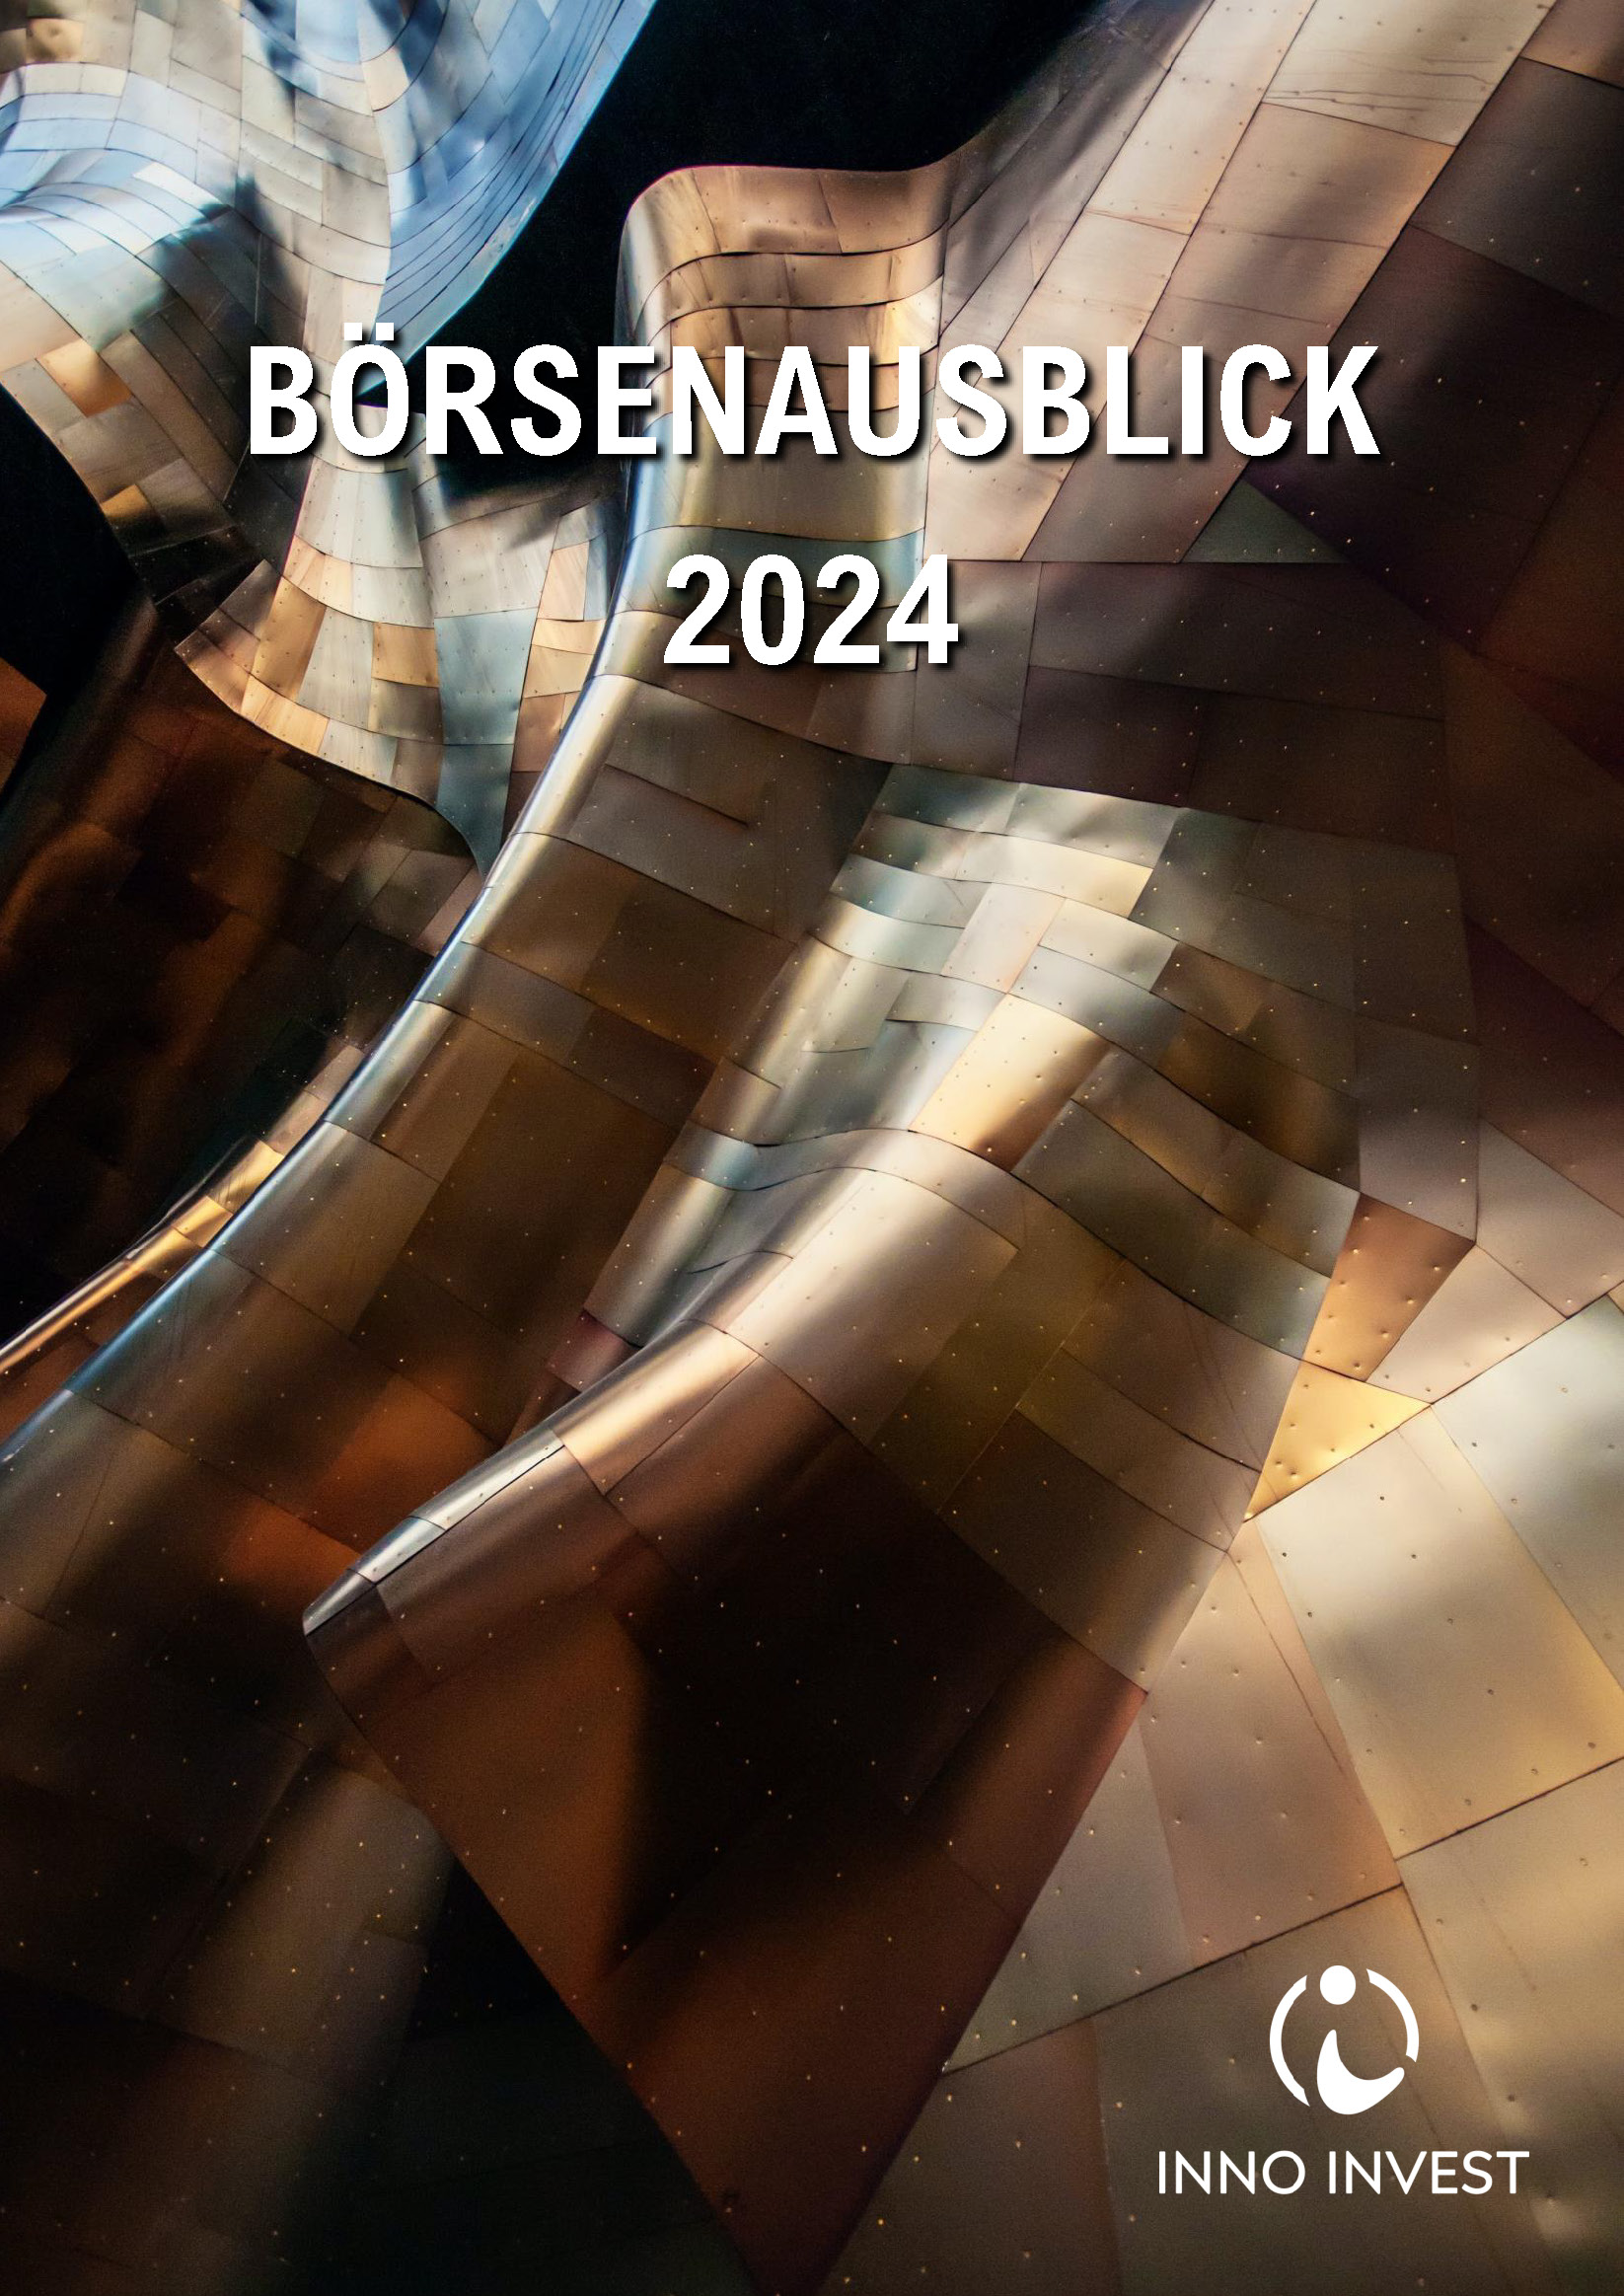 INNO INVEST - Börsenausblick 2024